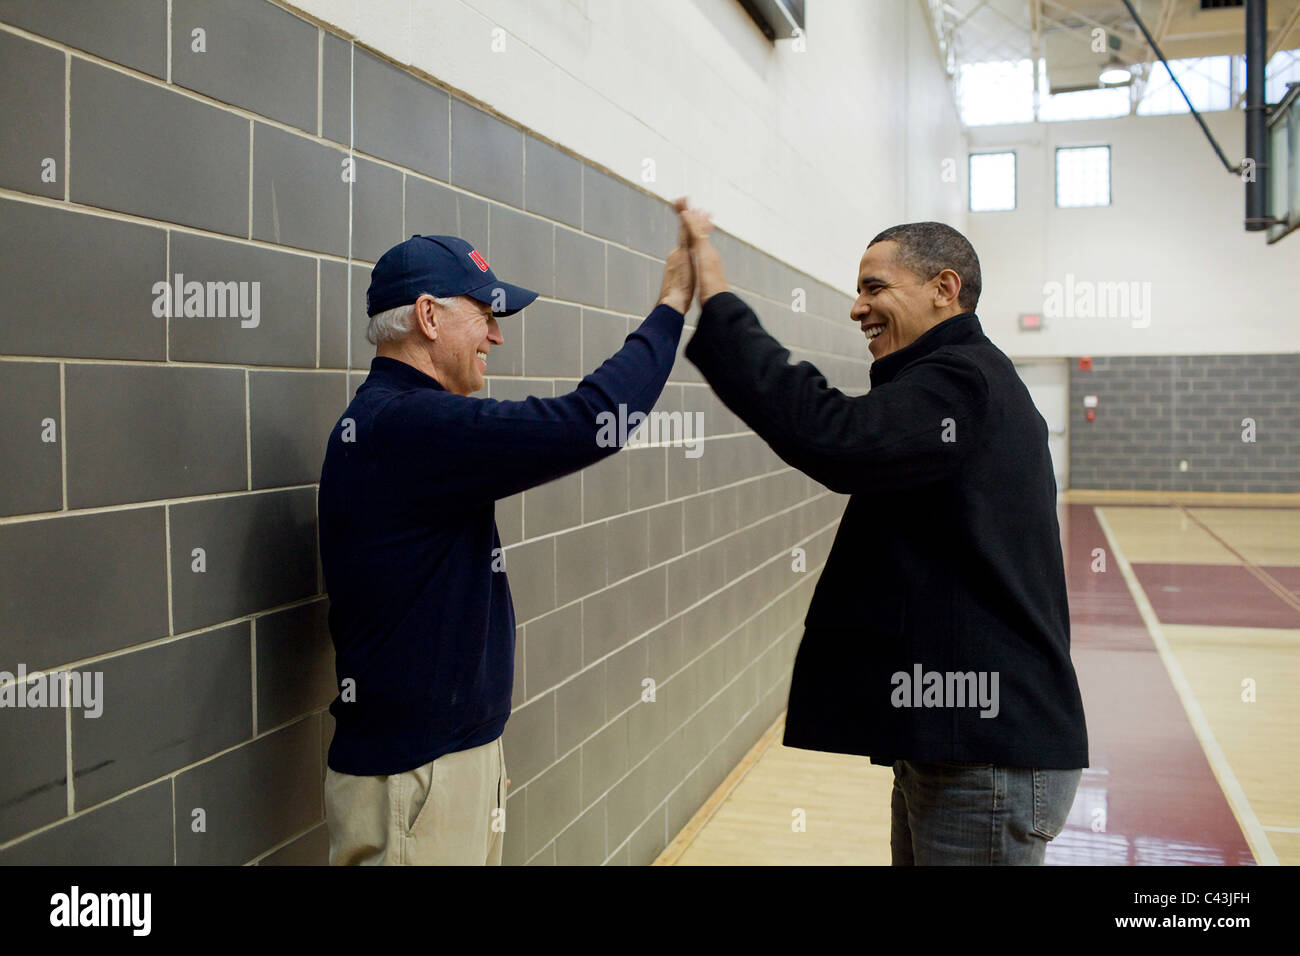 Le président Barack Obama et le Vice-président Joe Biden high-cinq après observation de Sasha Obama et Biden Maisy jouer dans un terrain de basket-ball Banque D'Images